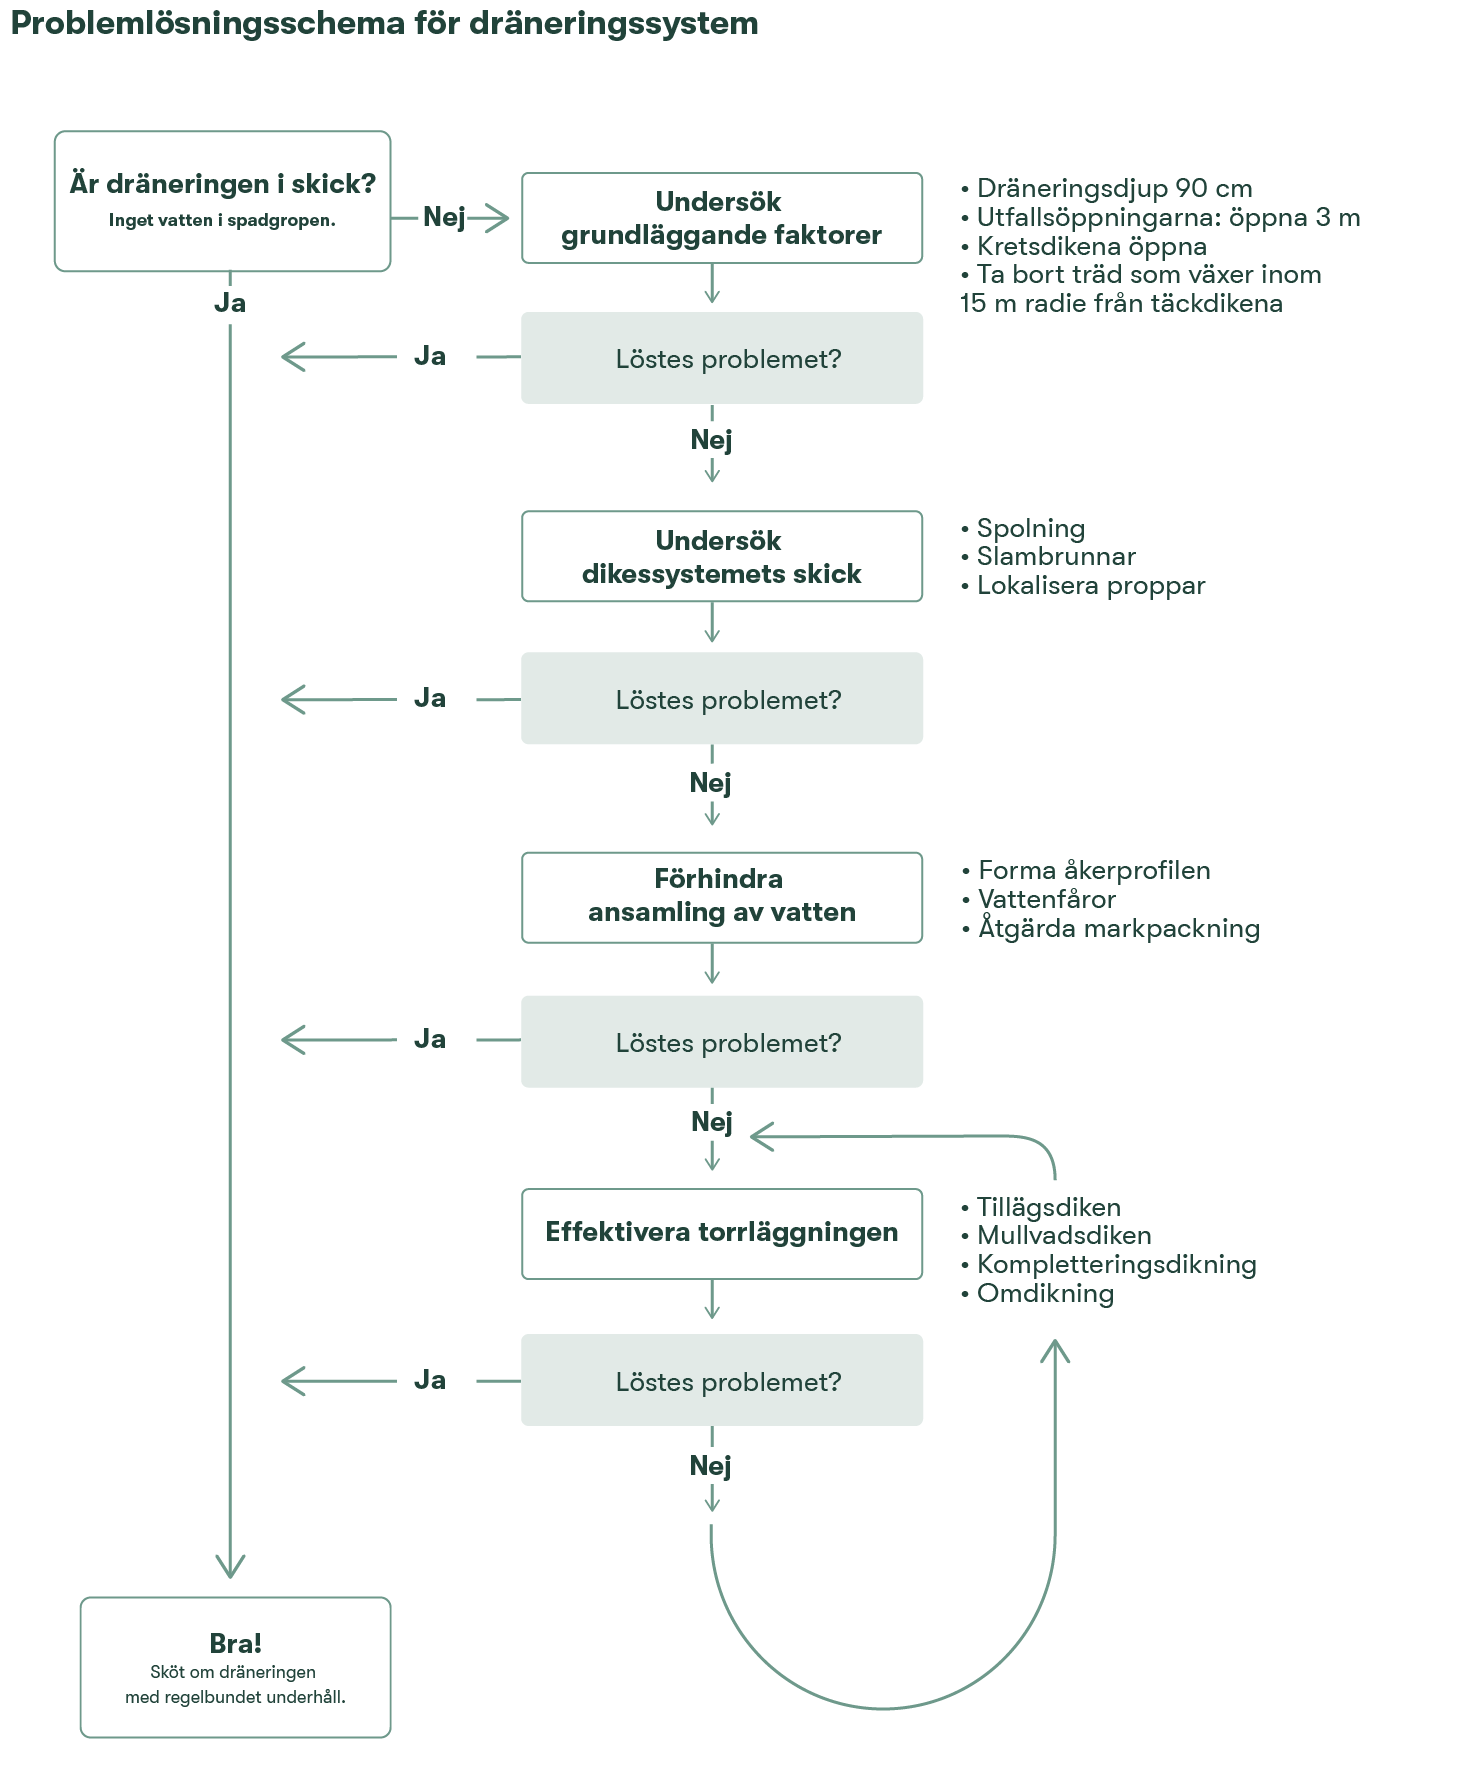 Bild 15. Problemlösningsschema för dräneringssystem.